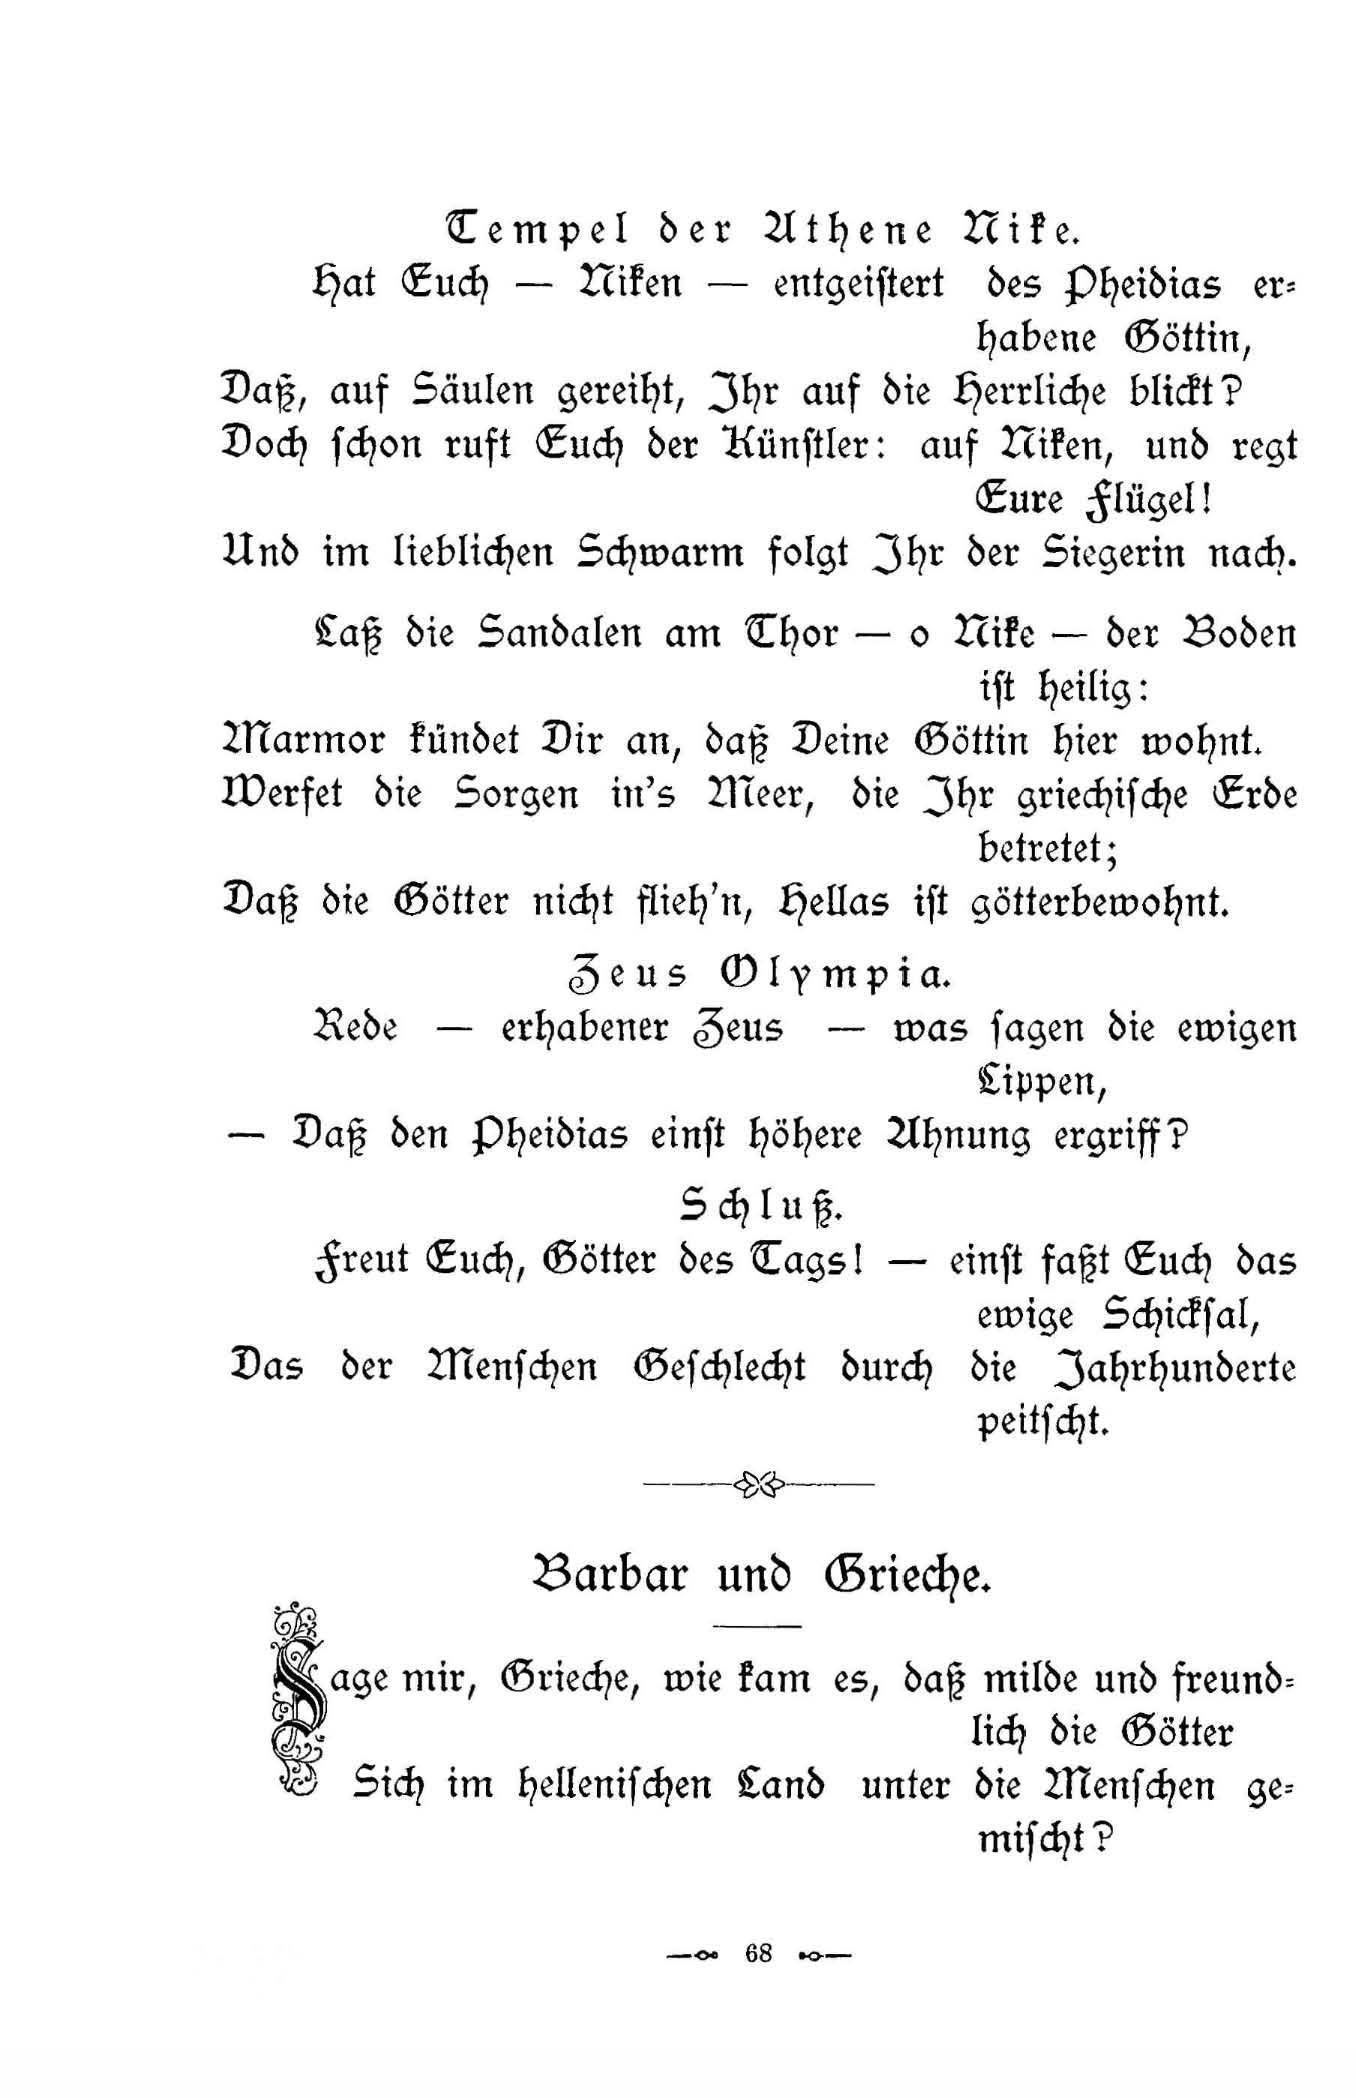 Barbar und Grieche (1896) | 1. (68) Main body of text